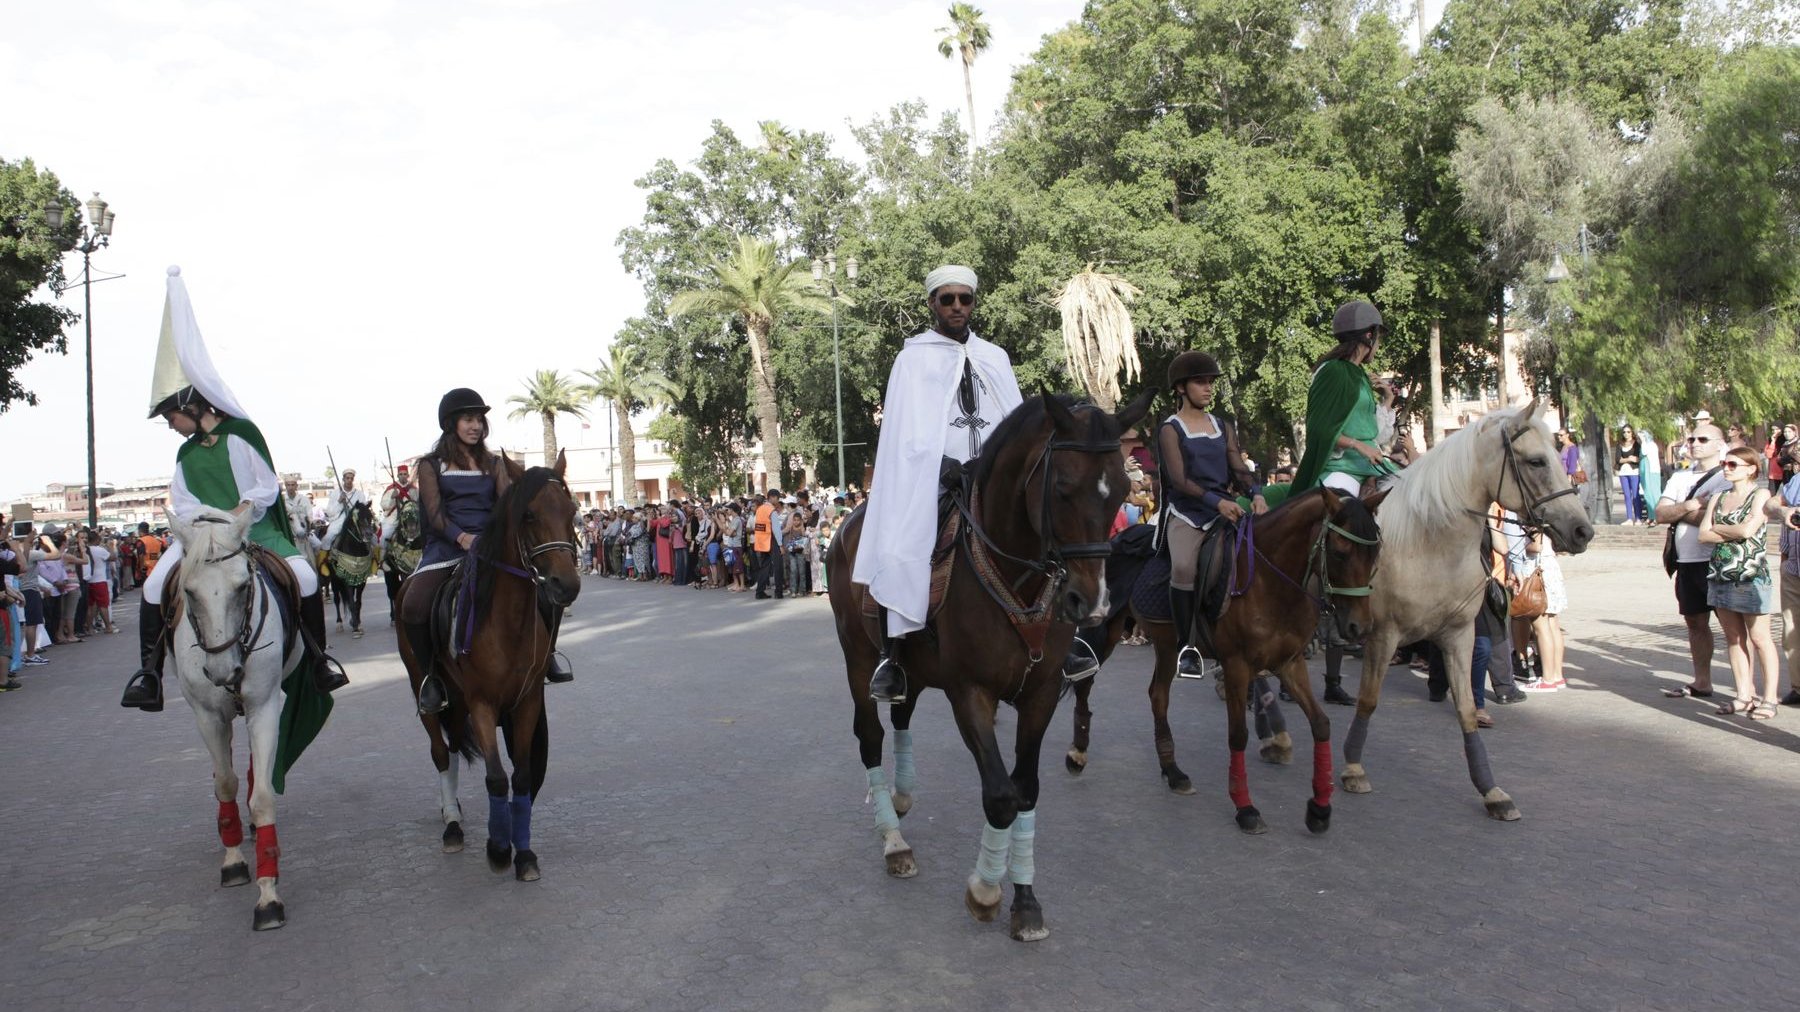 La parade est d'une beauté majestueuse. La grâce et l'élégance sont au rendez-vous. 40 chevaux et 8 calèches défilent sur le boulevard Mohammed V. Un moment d'une belle poésie.  
